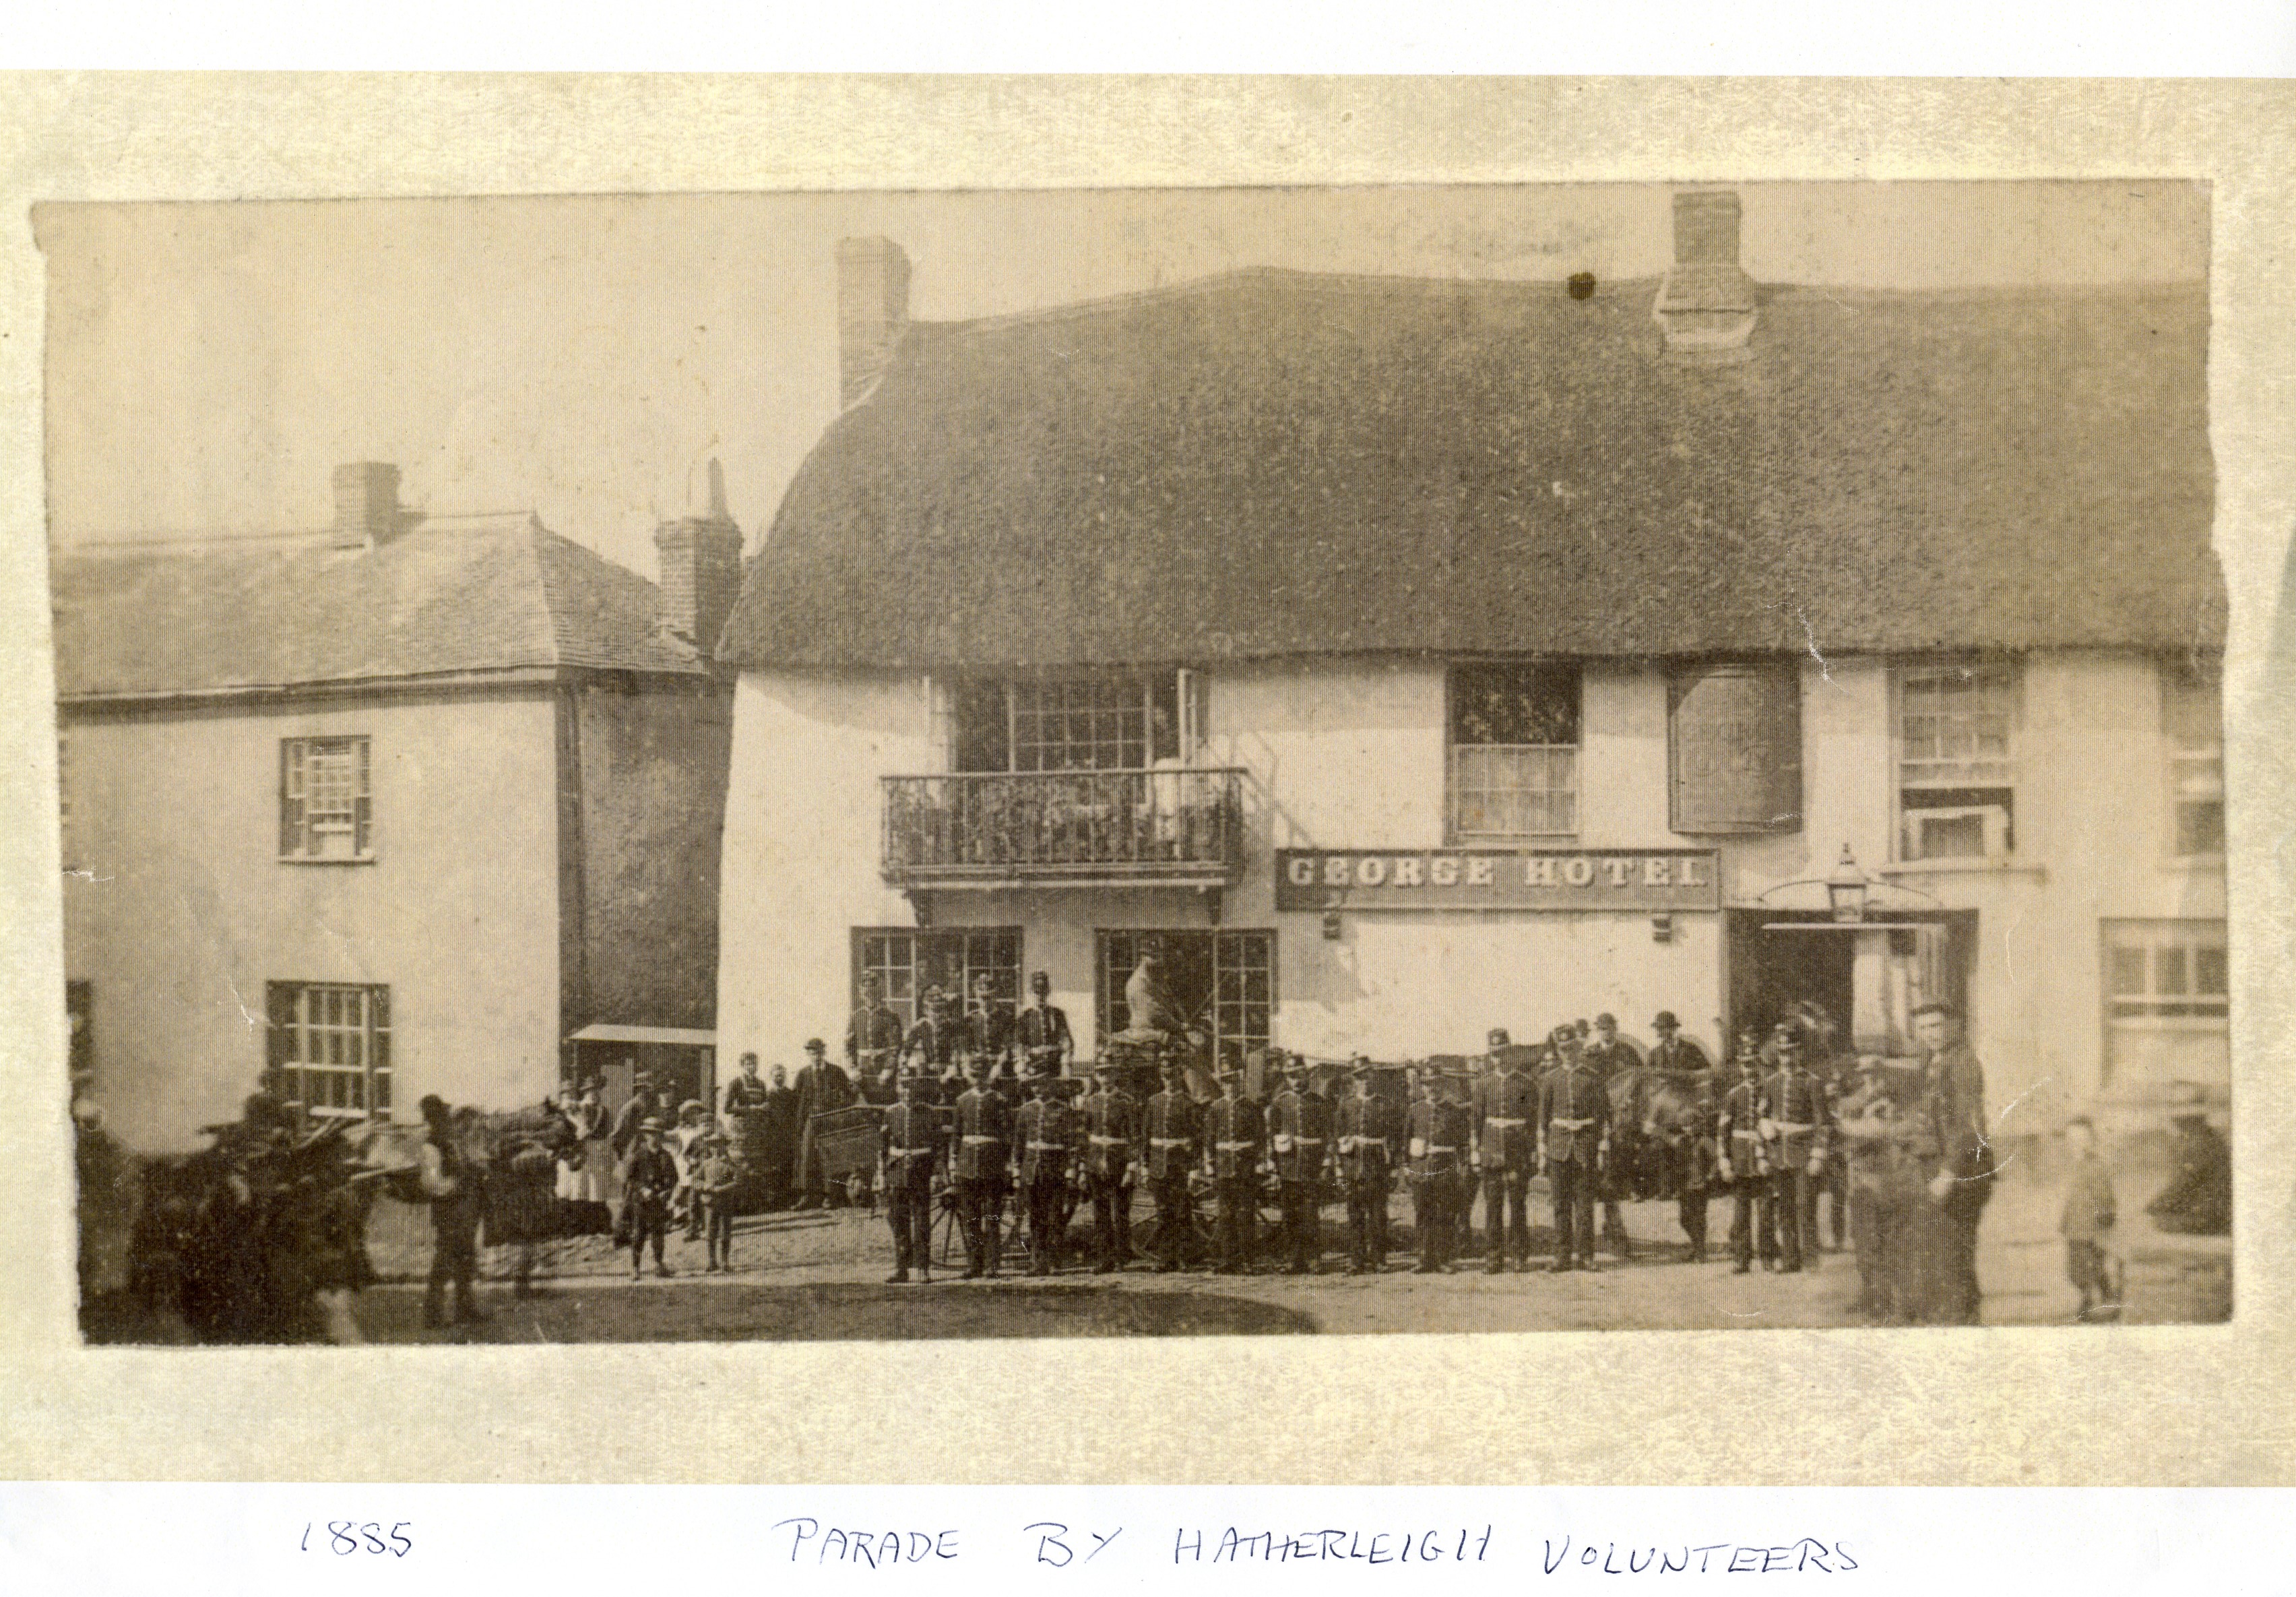 George c.1885 Parade by Hatherleigh Volunteers